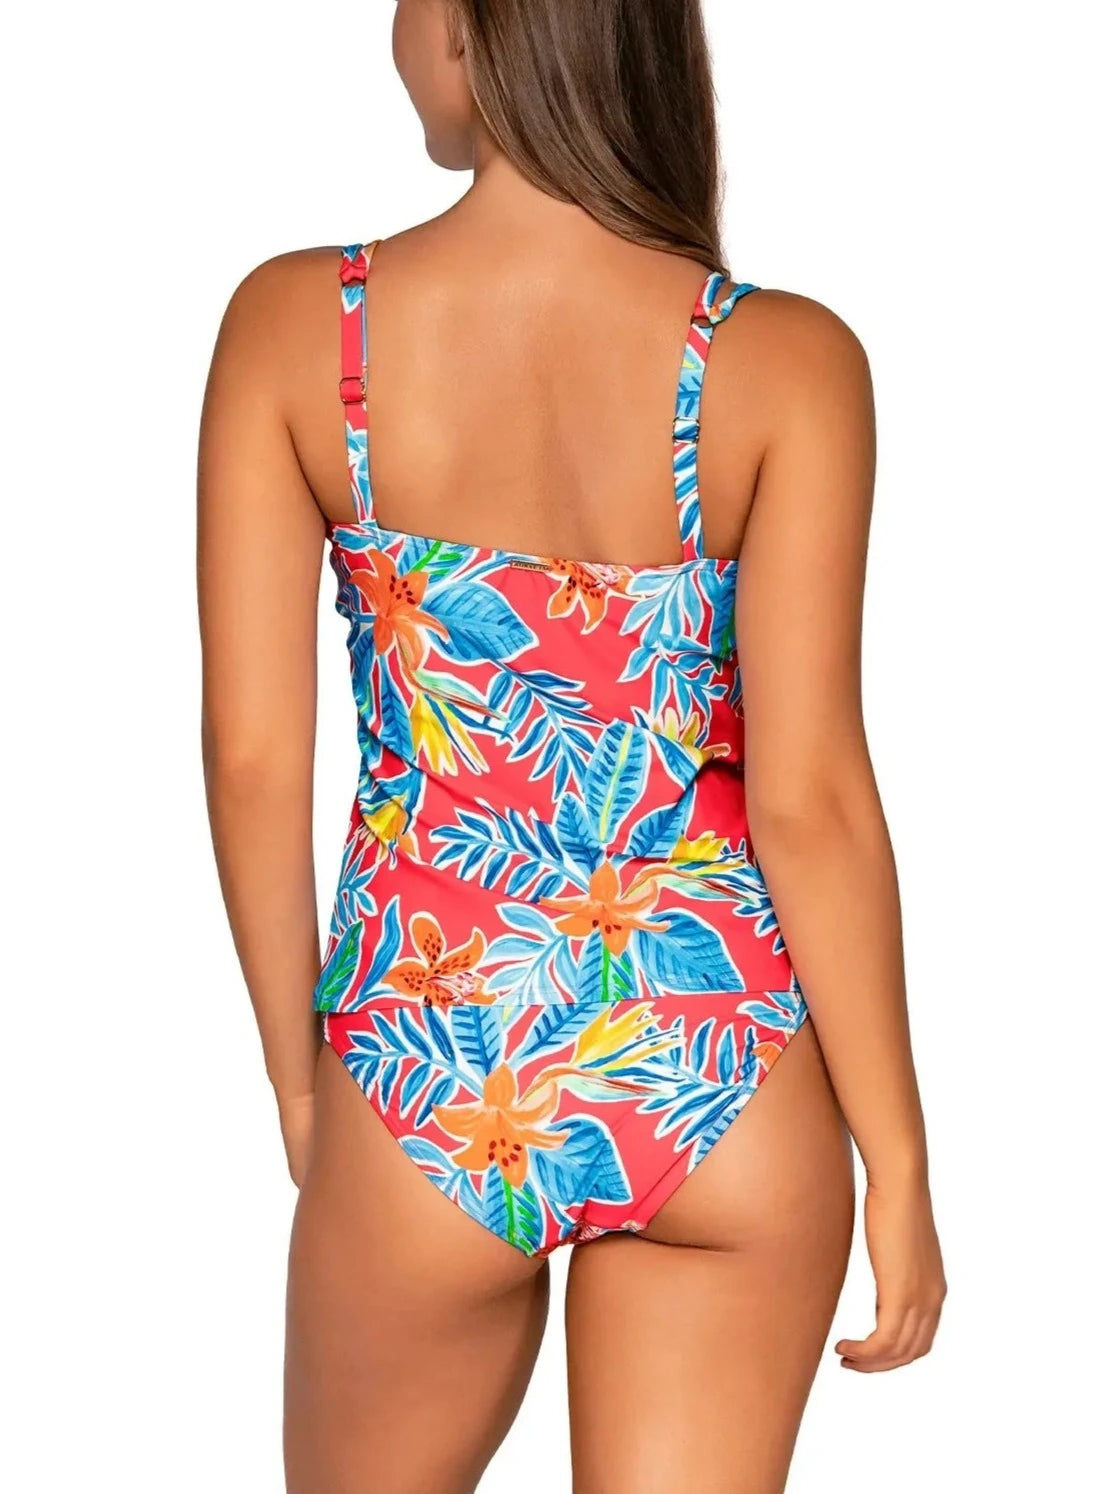 Sunsets Escape "Brands,Swimwear" 32D/34C / TIGLI / 75 Sunsets Tiger Lily Taylor Tankini